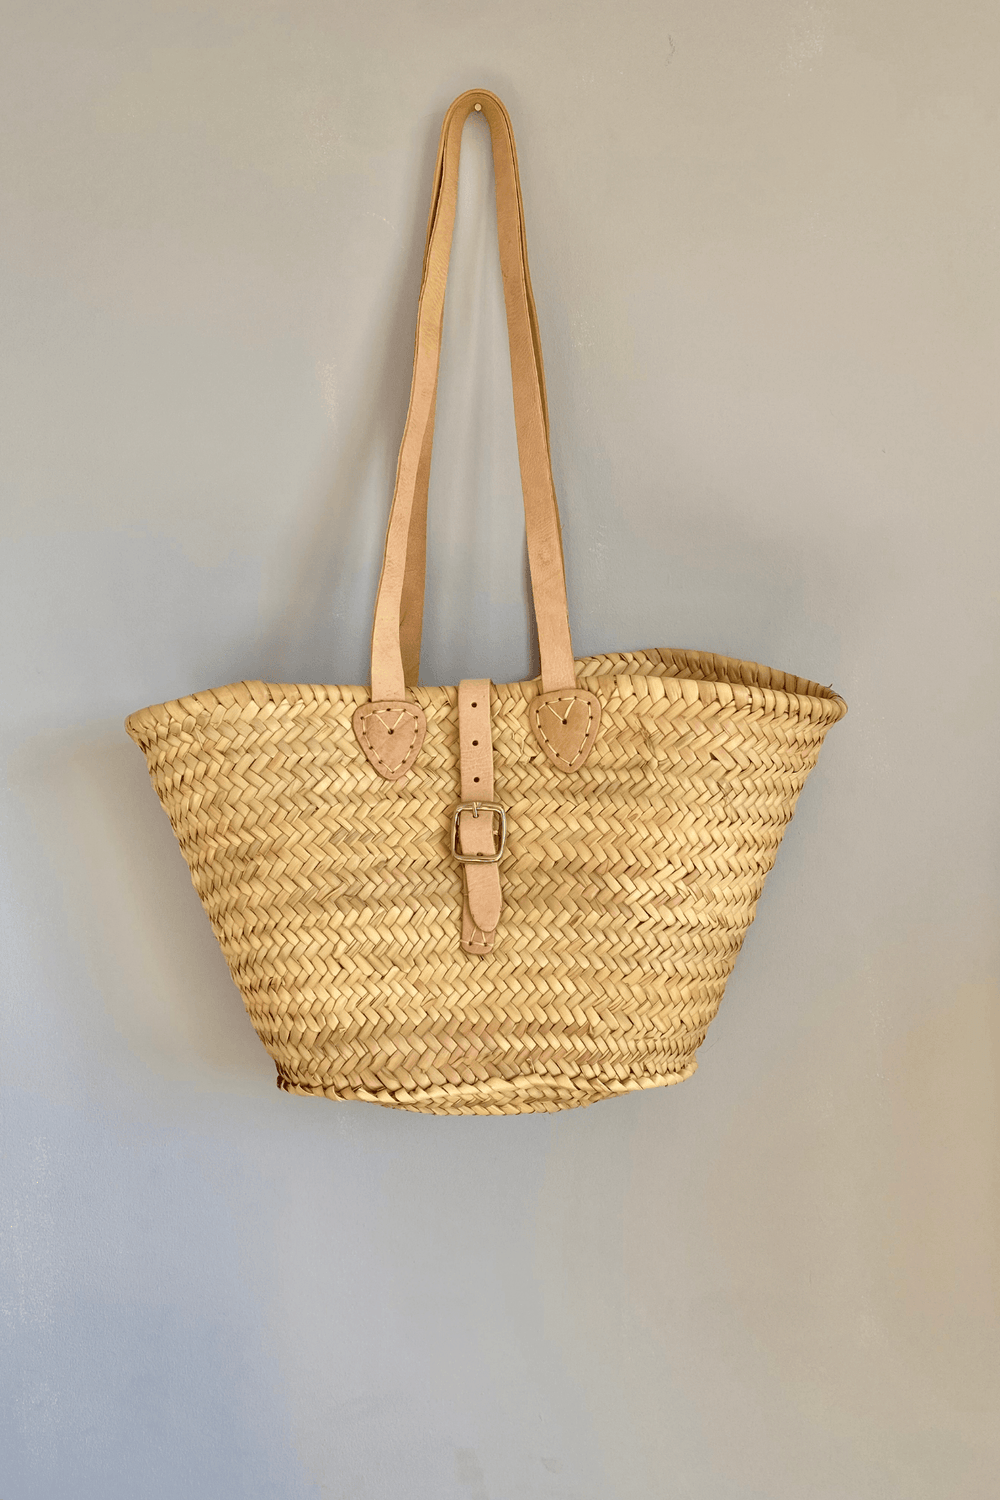 Hand Woven Basket Shoulder Bag with Strap - One Hundred Stars